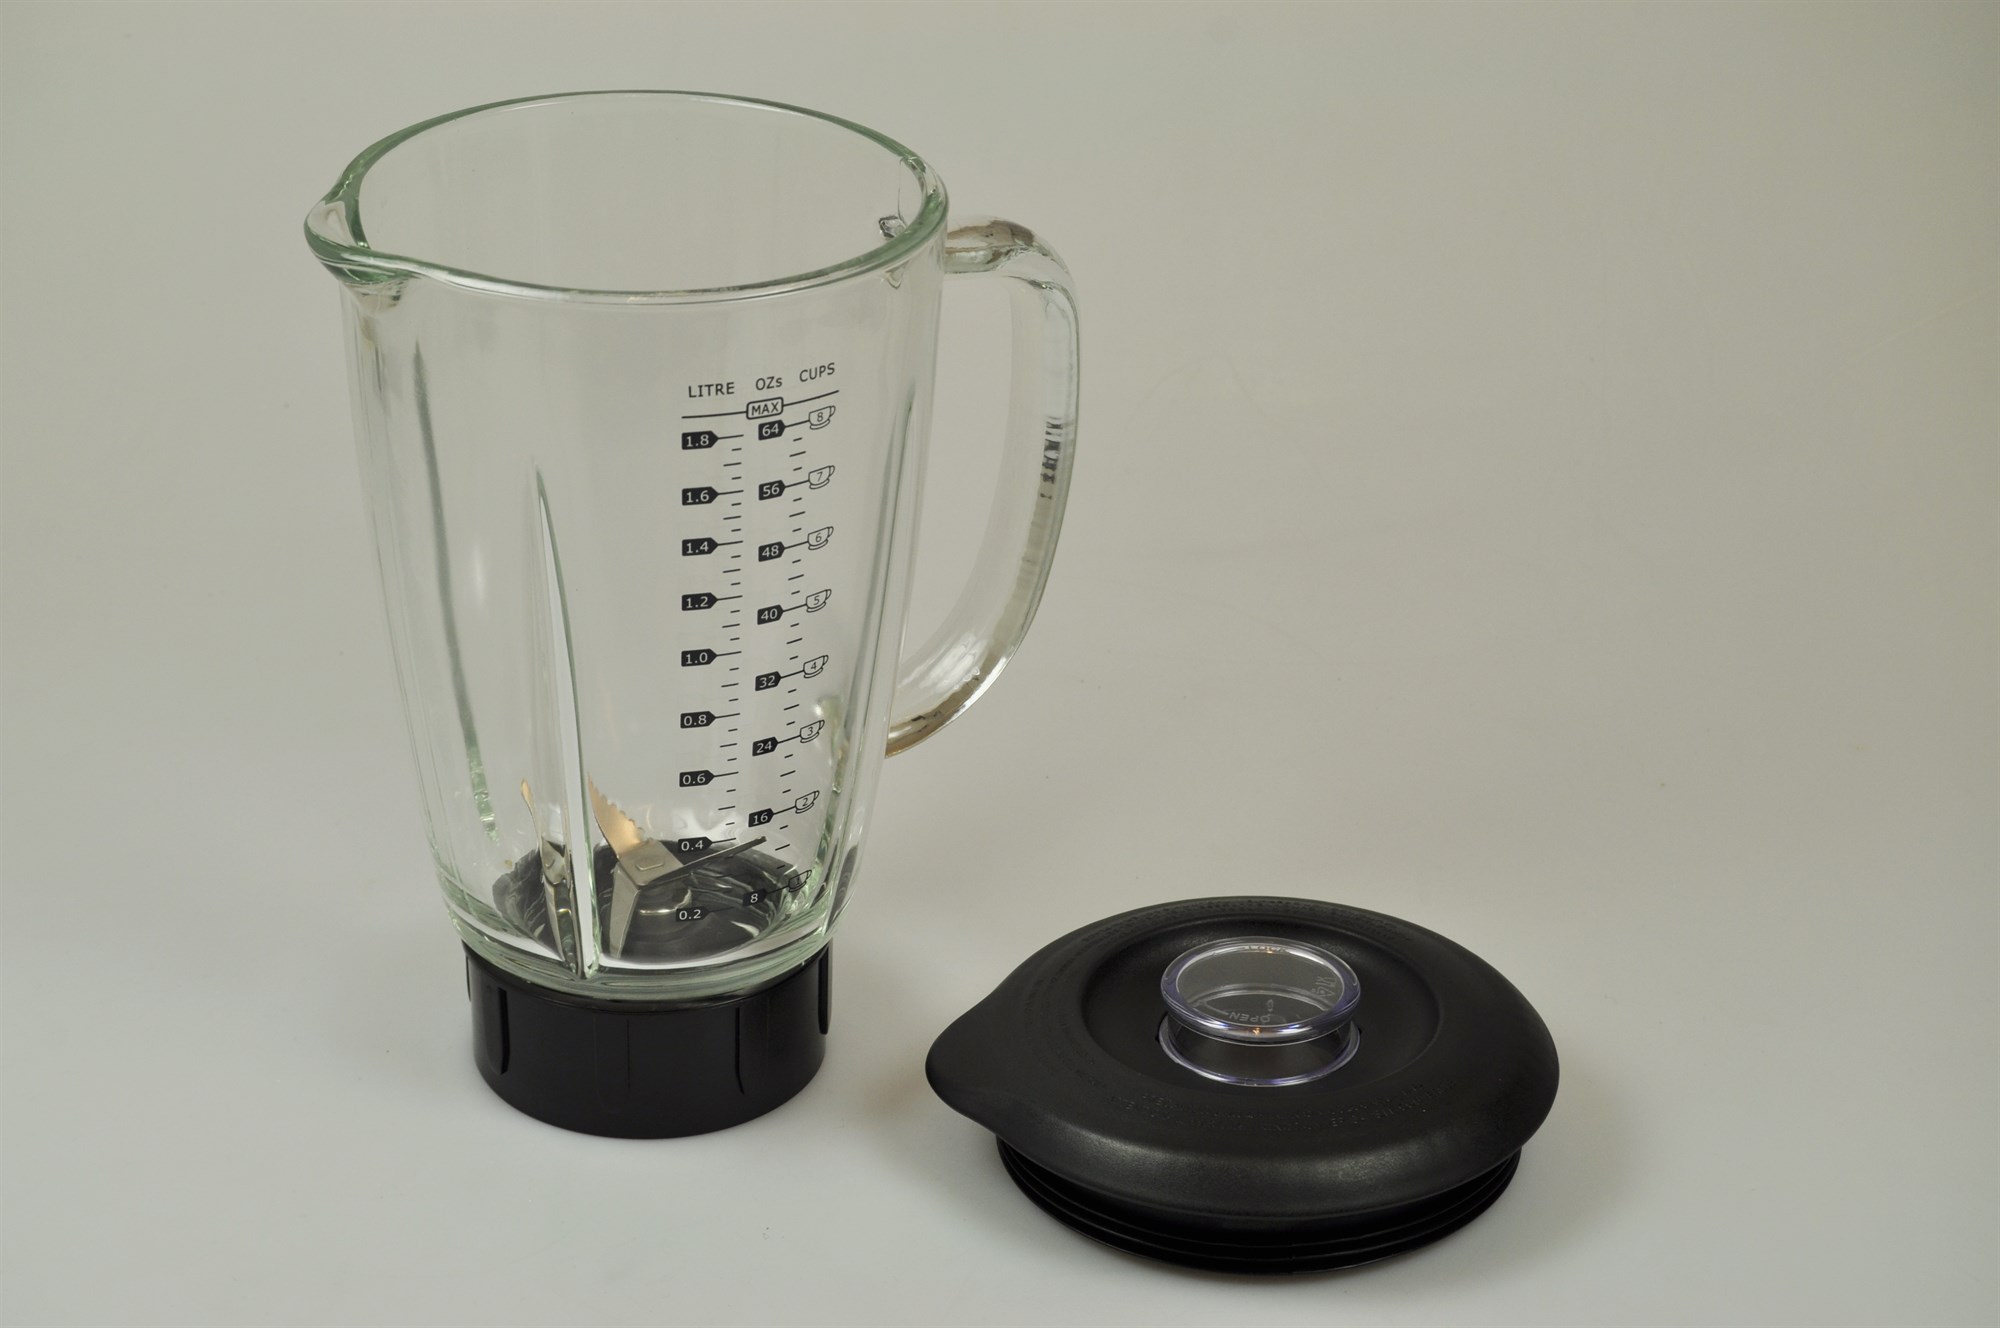 Civic Fakultet Remission Glass jug, Wilfa blender - 1800 ml